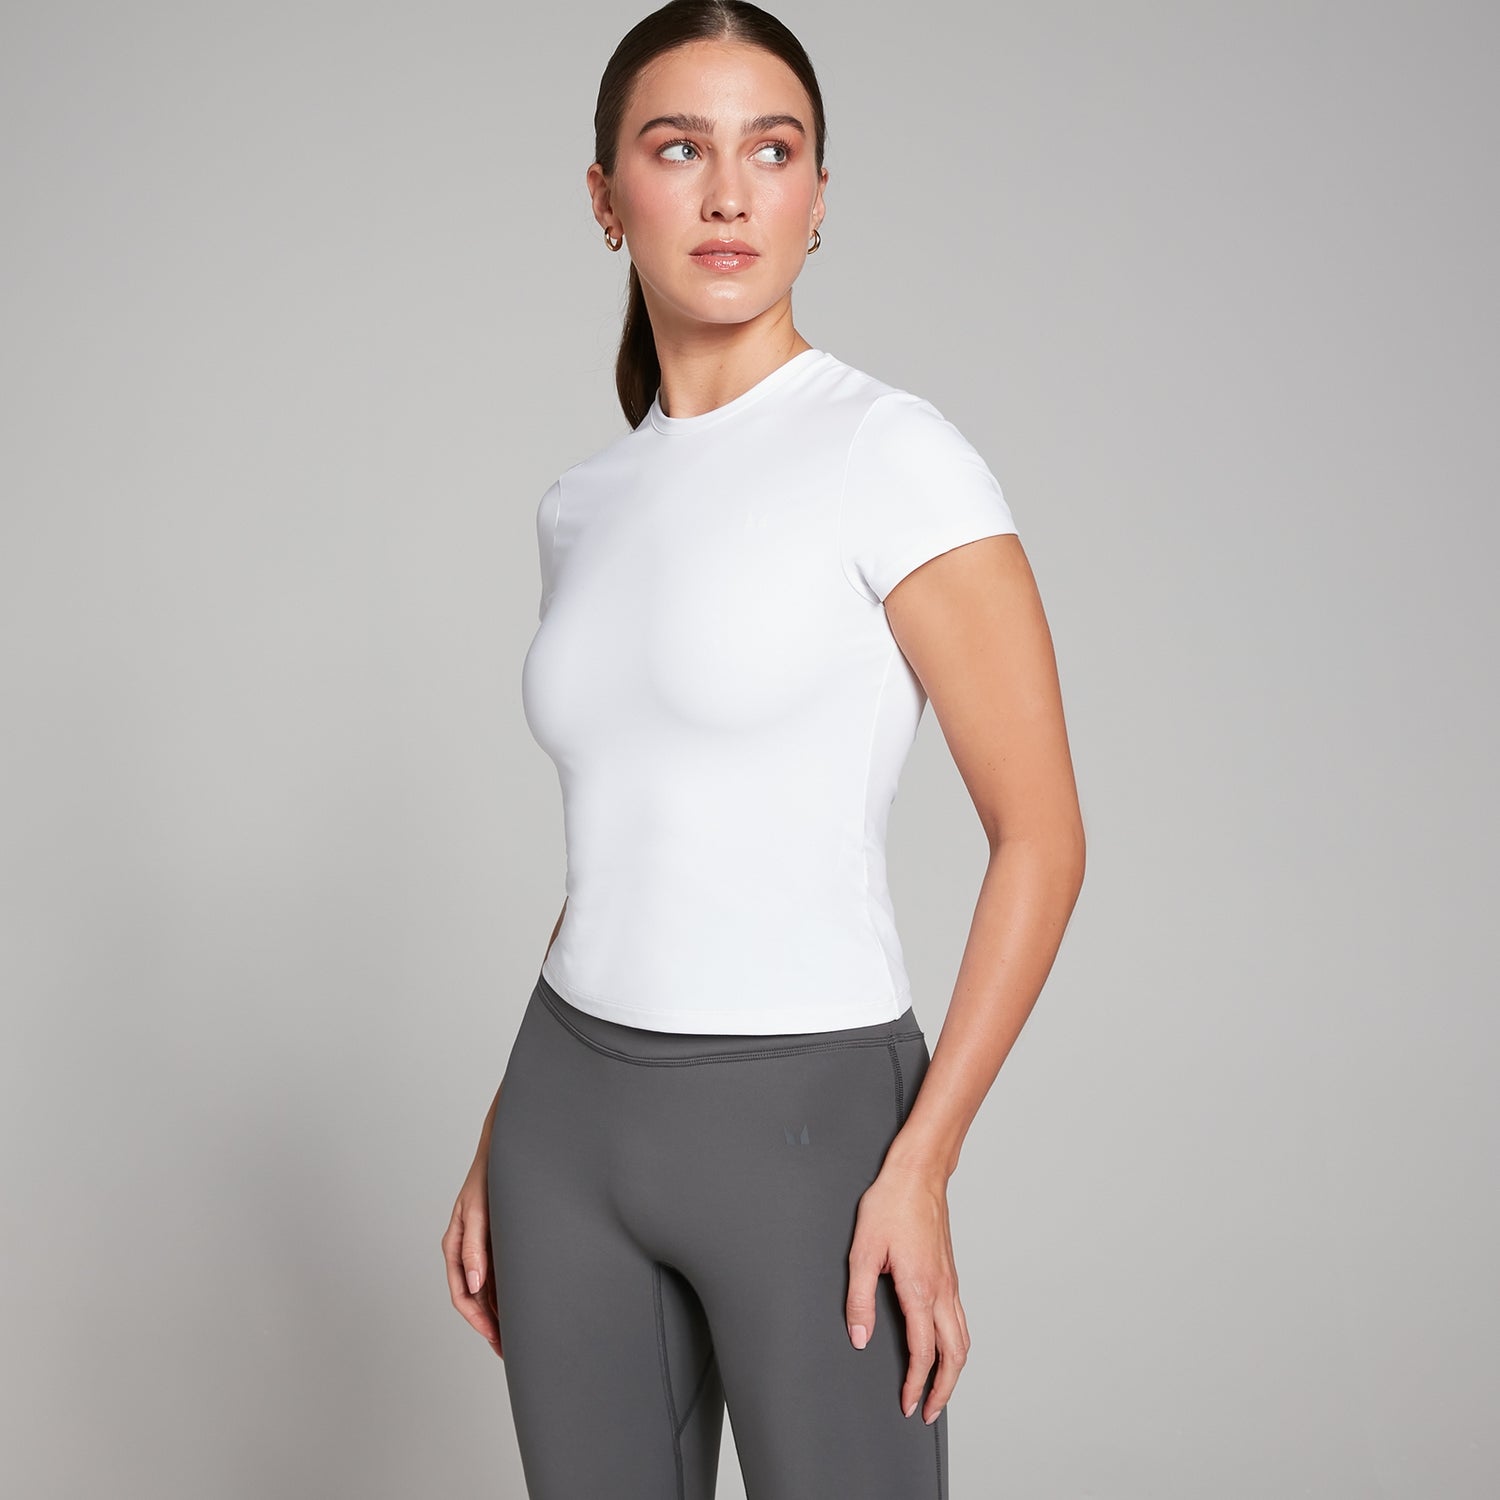 Женская облегающая футболка с короткими рукавами MP Tempo — белый цвет - M